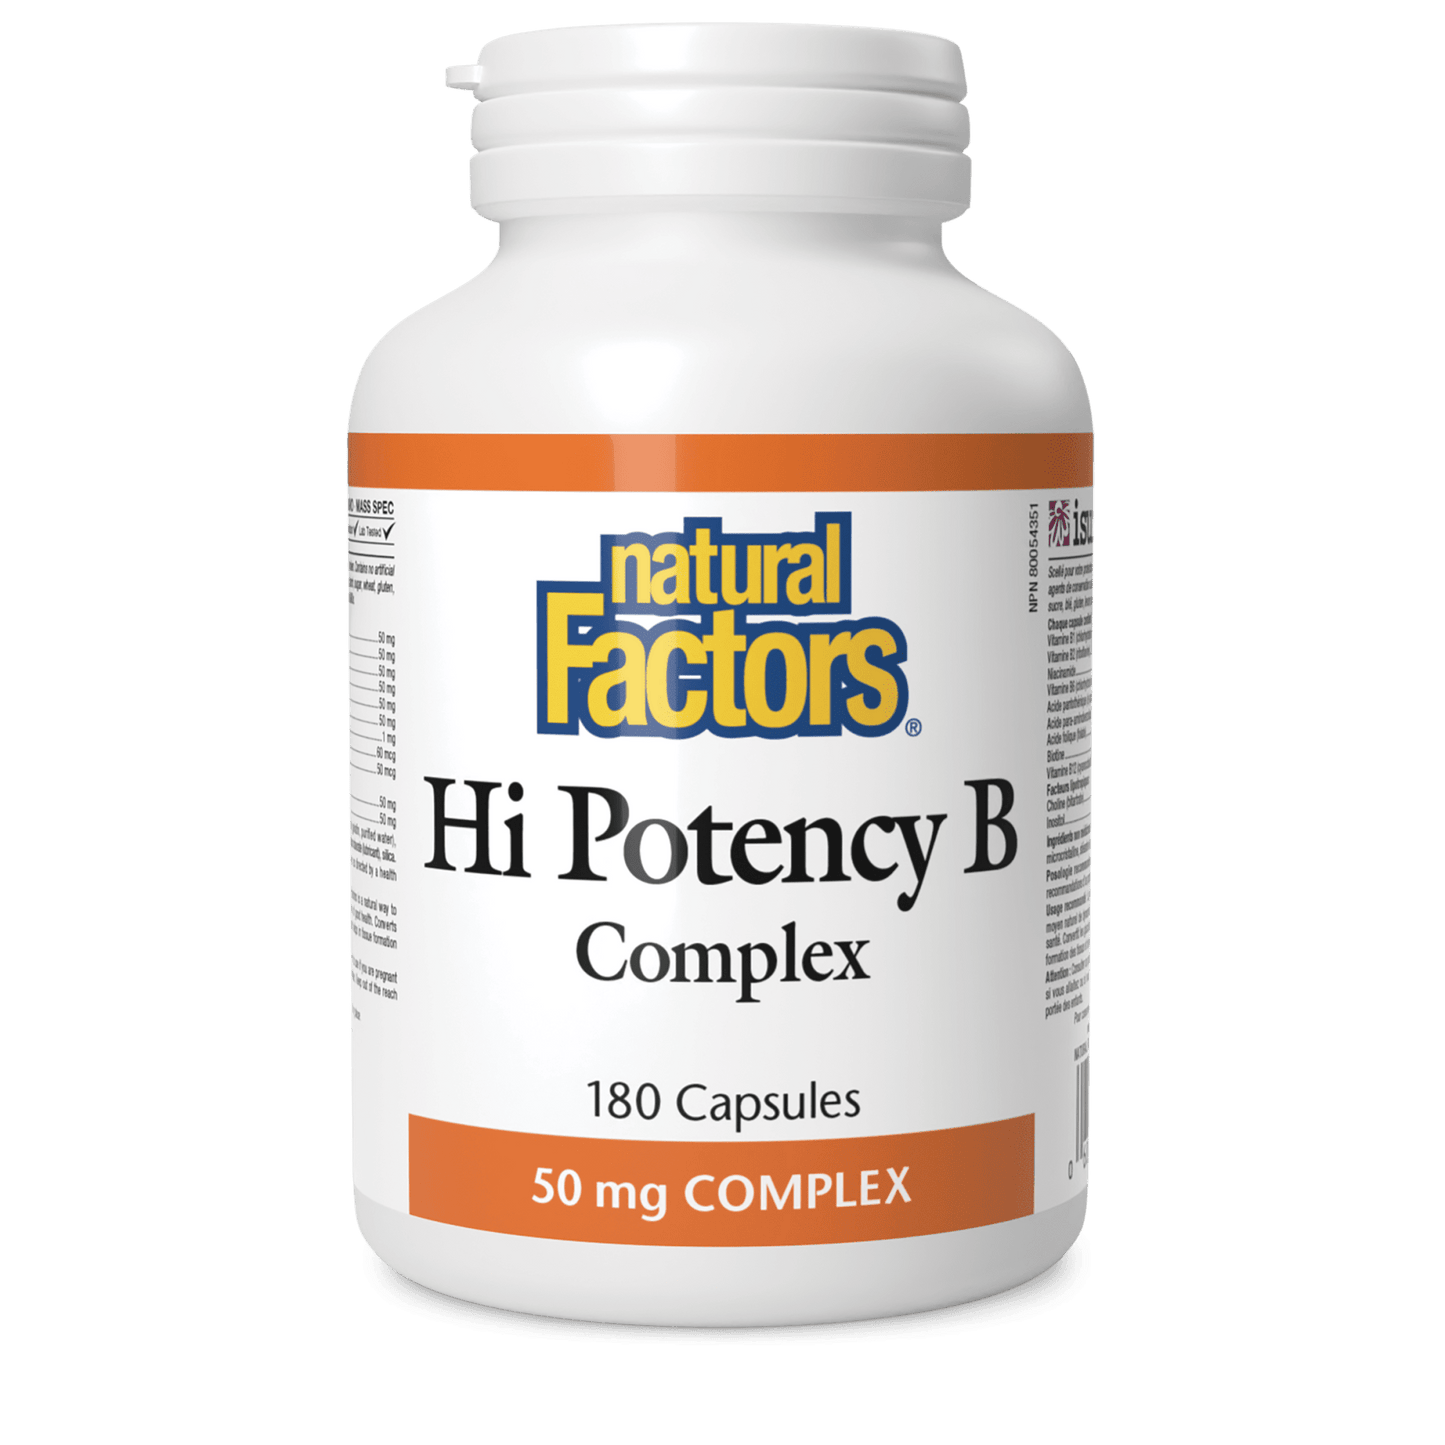 Hi Potency B Complex 50 mg, Natural Factors|v|image|1122